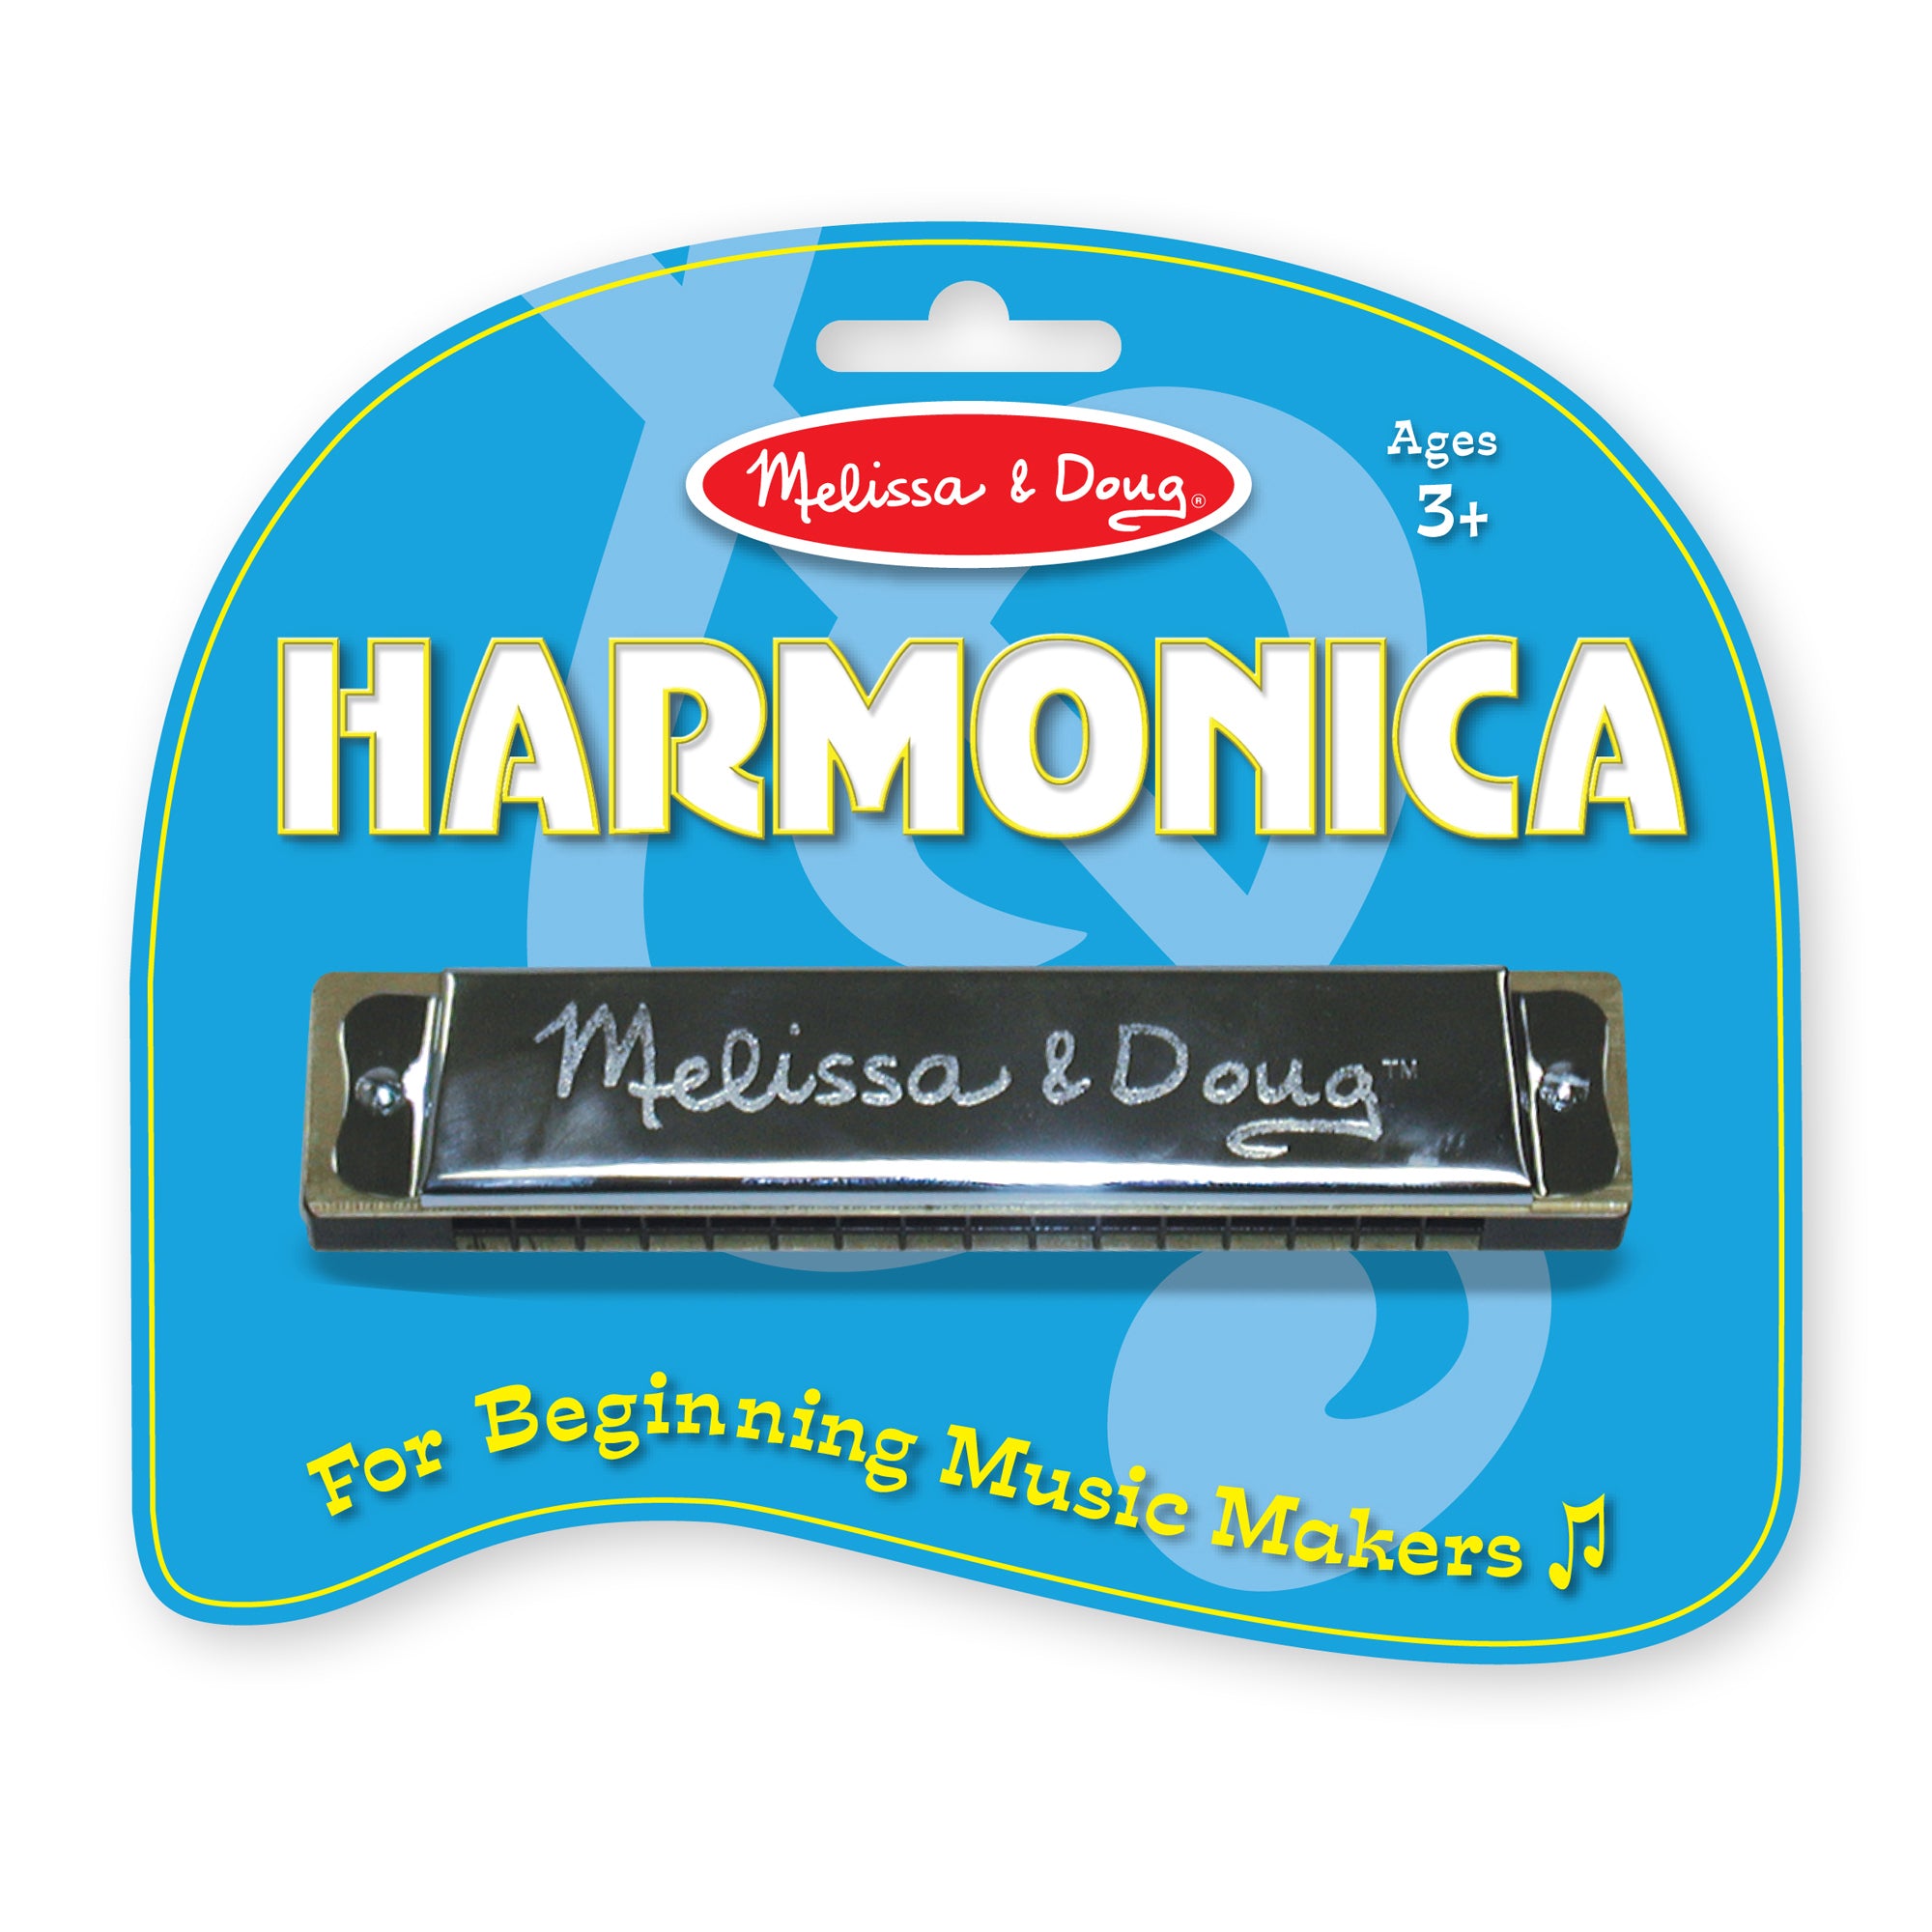 Harmonica